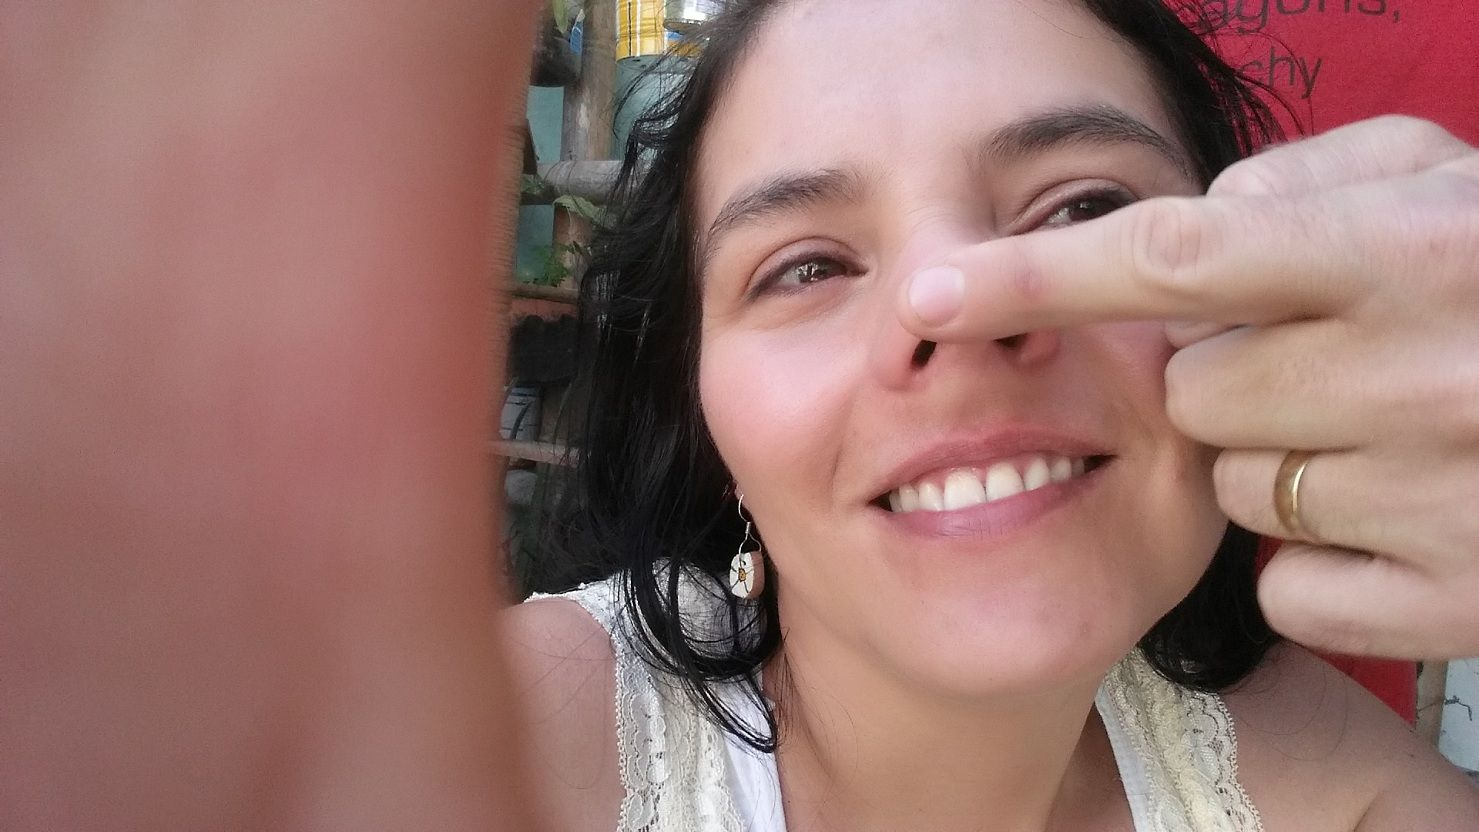 Ledis day eight selfie hand on nose.jpg